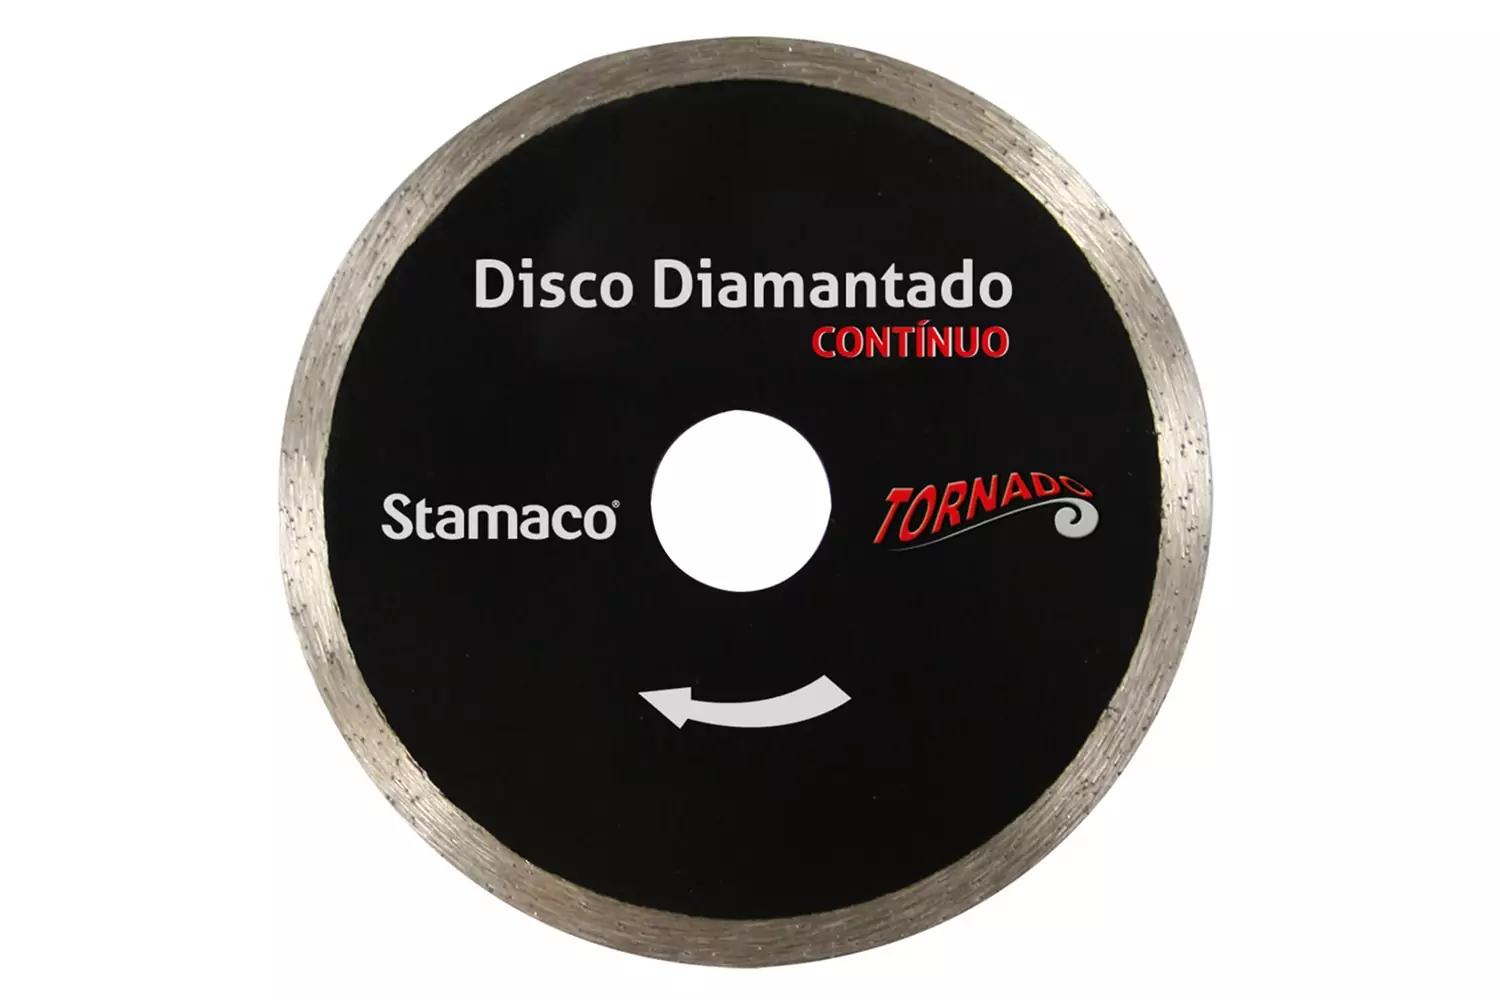 Disco Diamantado Contínuo Tornado Corte a Seco 4" Stamaco